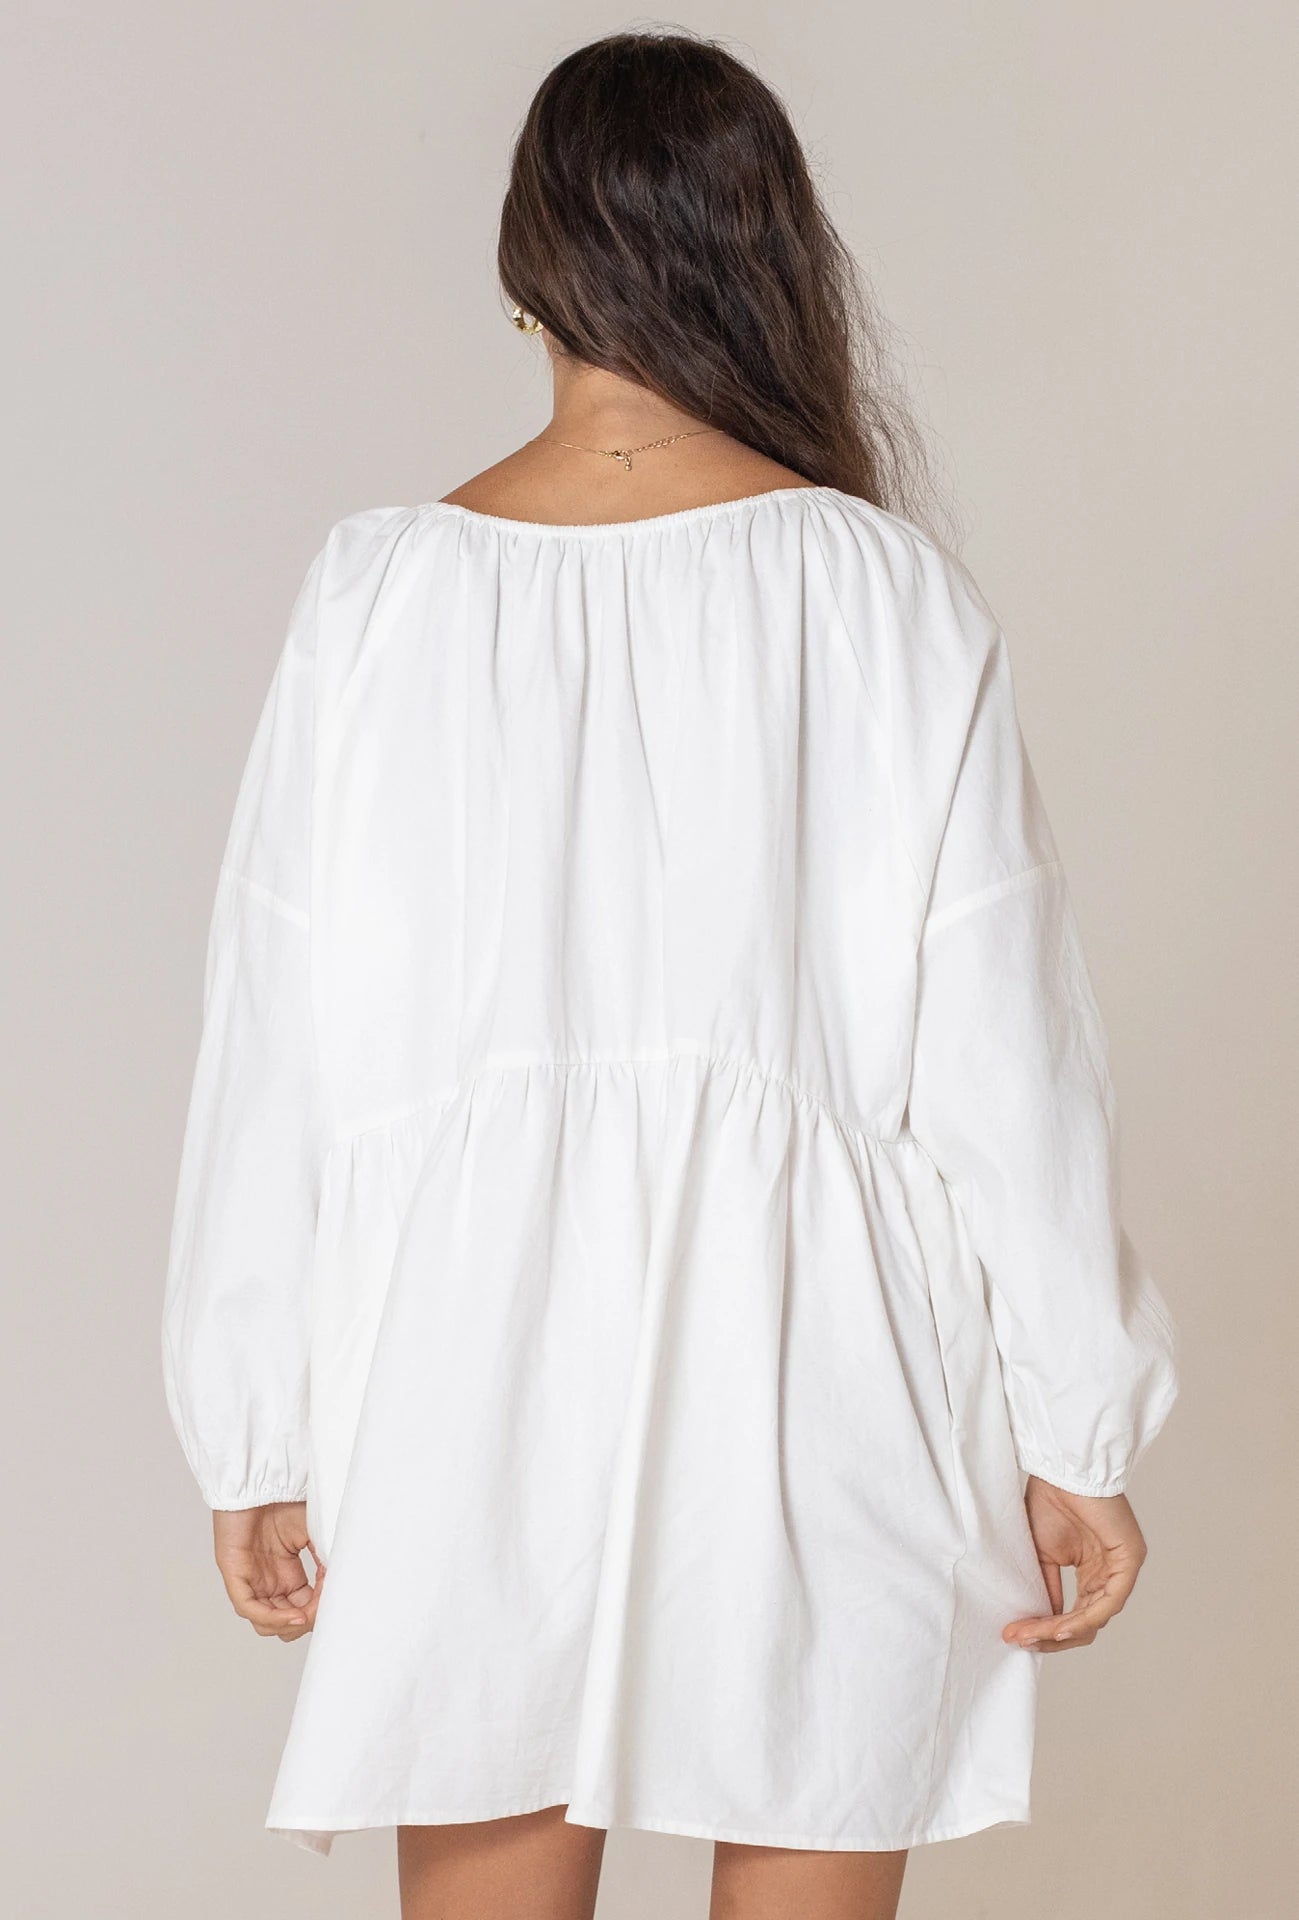 LEO DRESS - WHITE